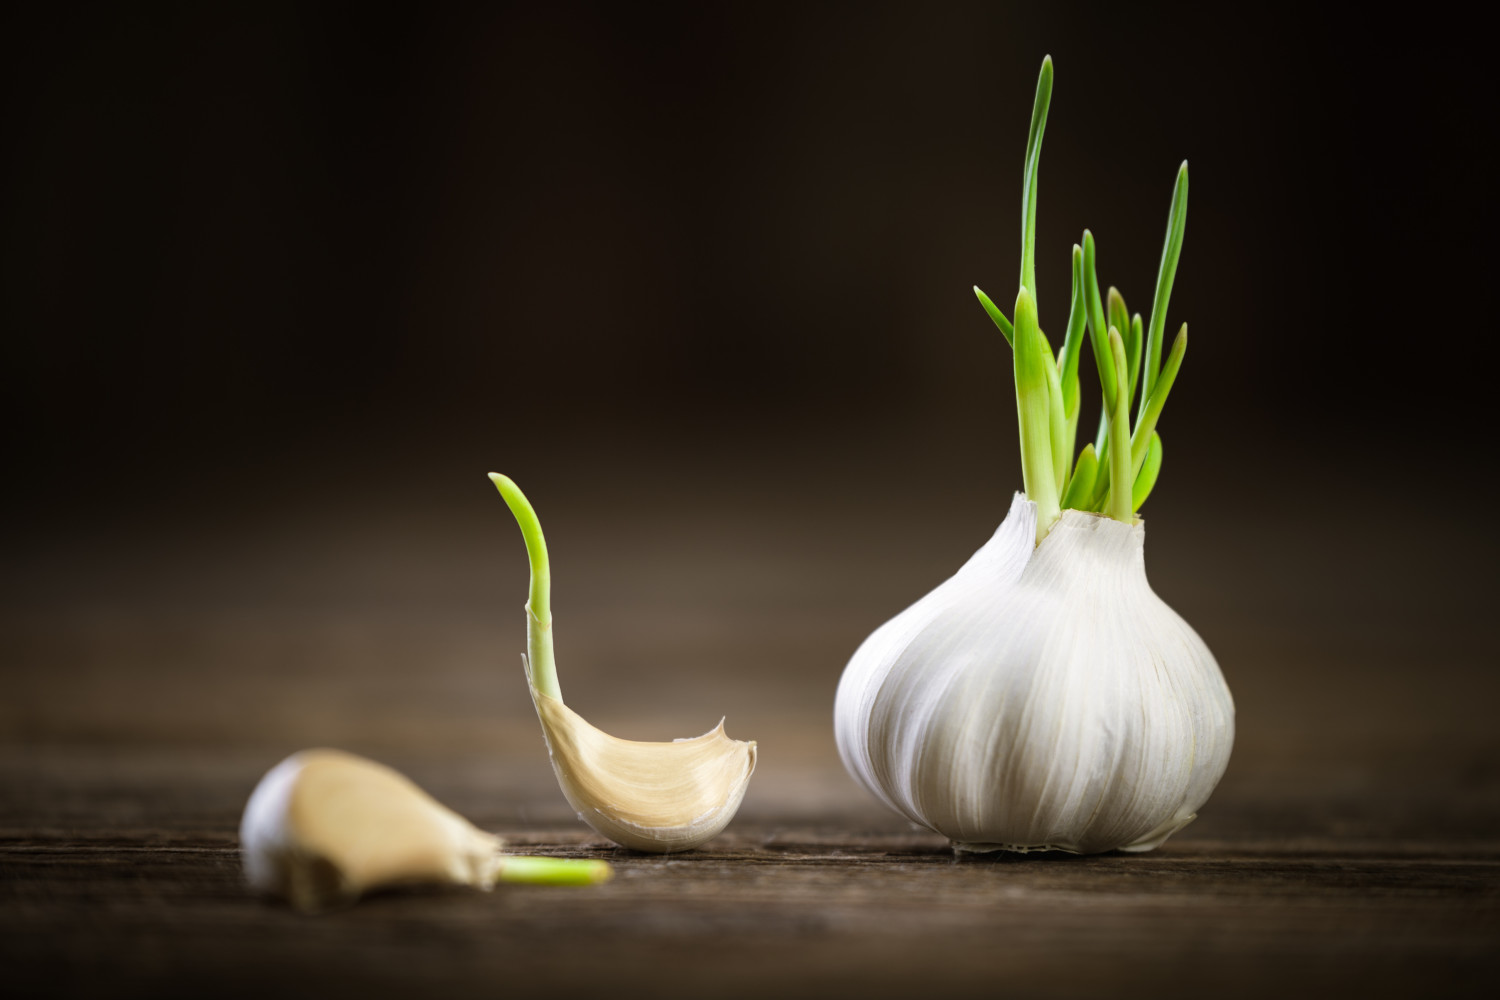 Garlic sprouting